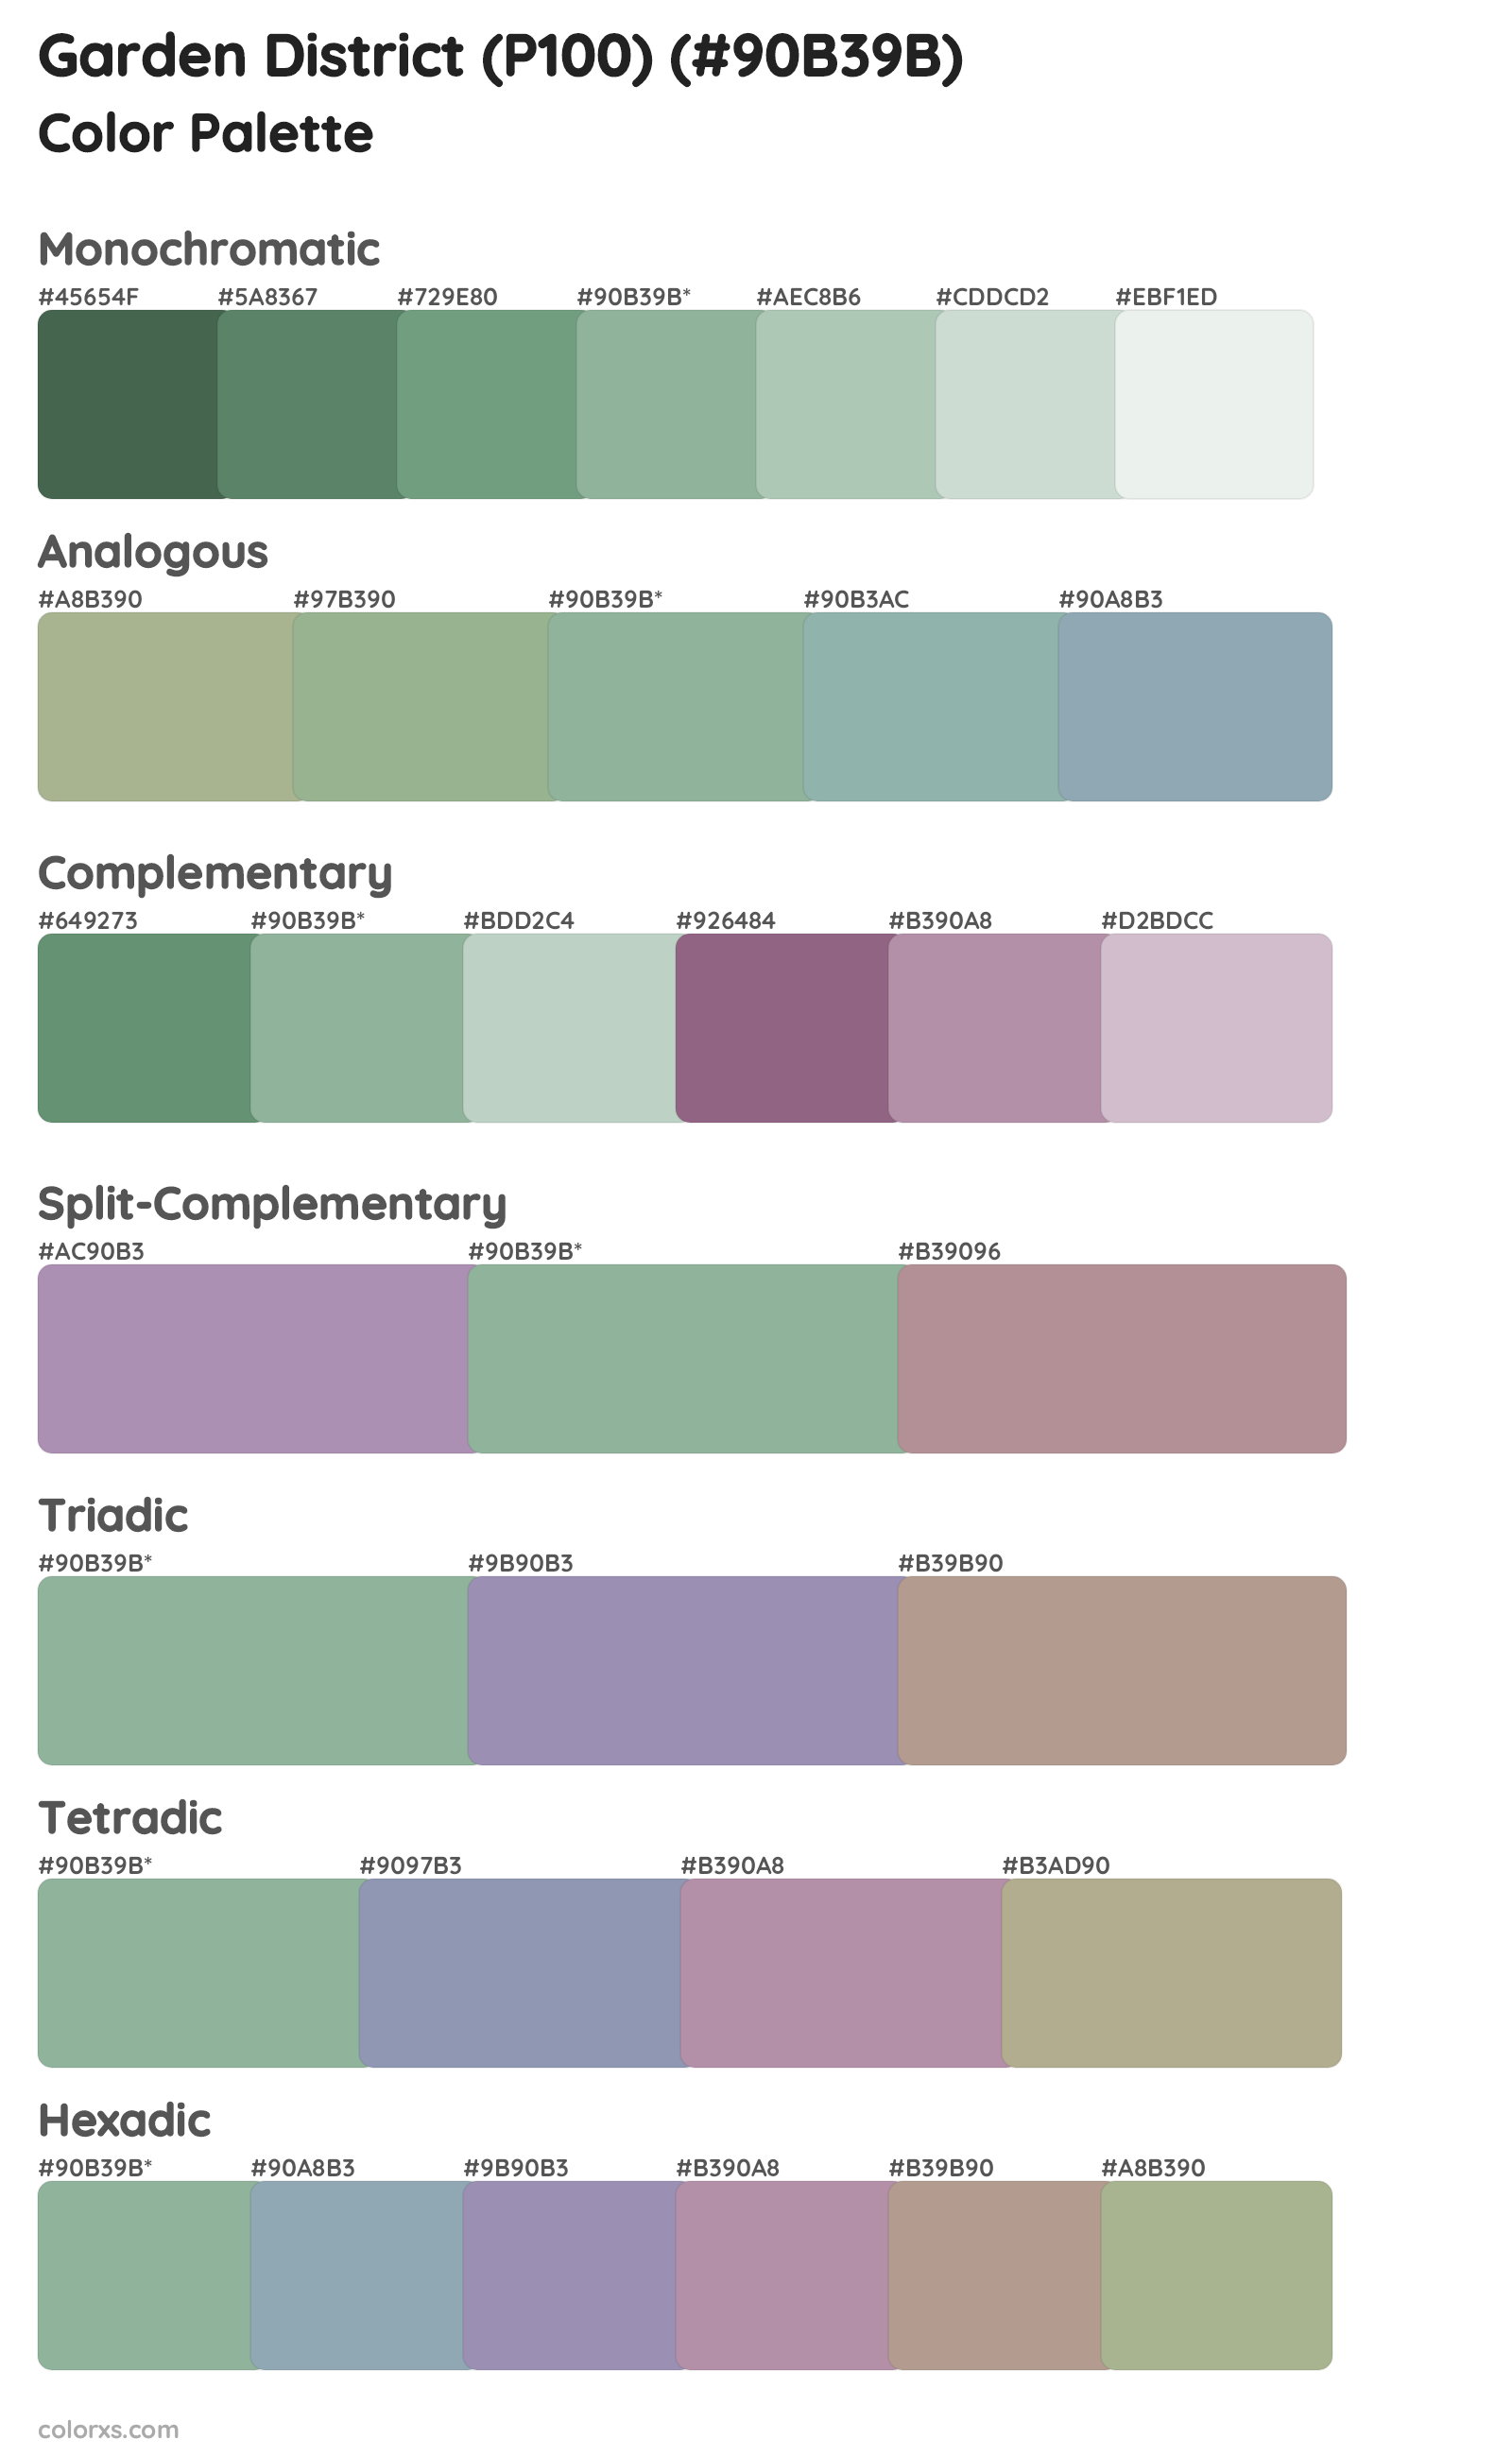 Garden District (P100) Color Scheme Palettes